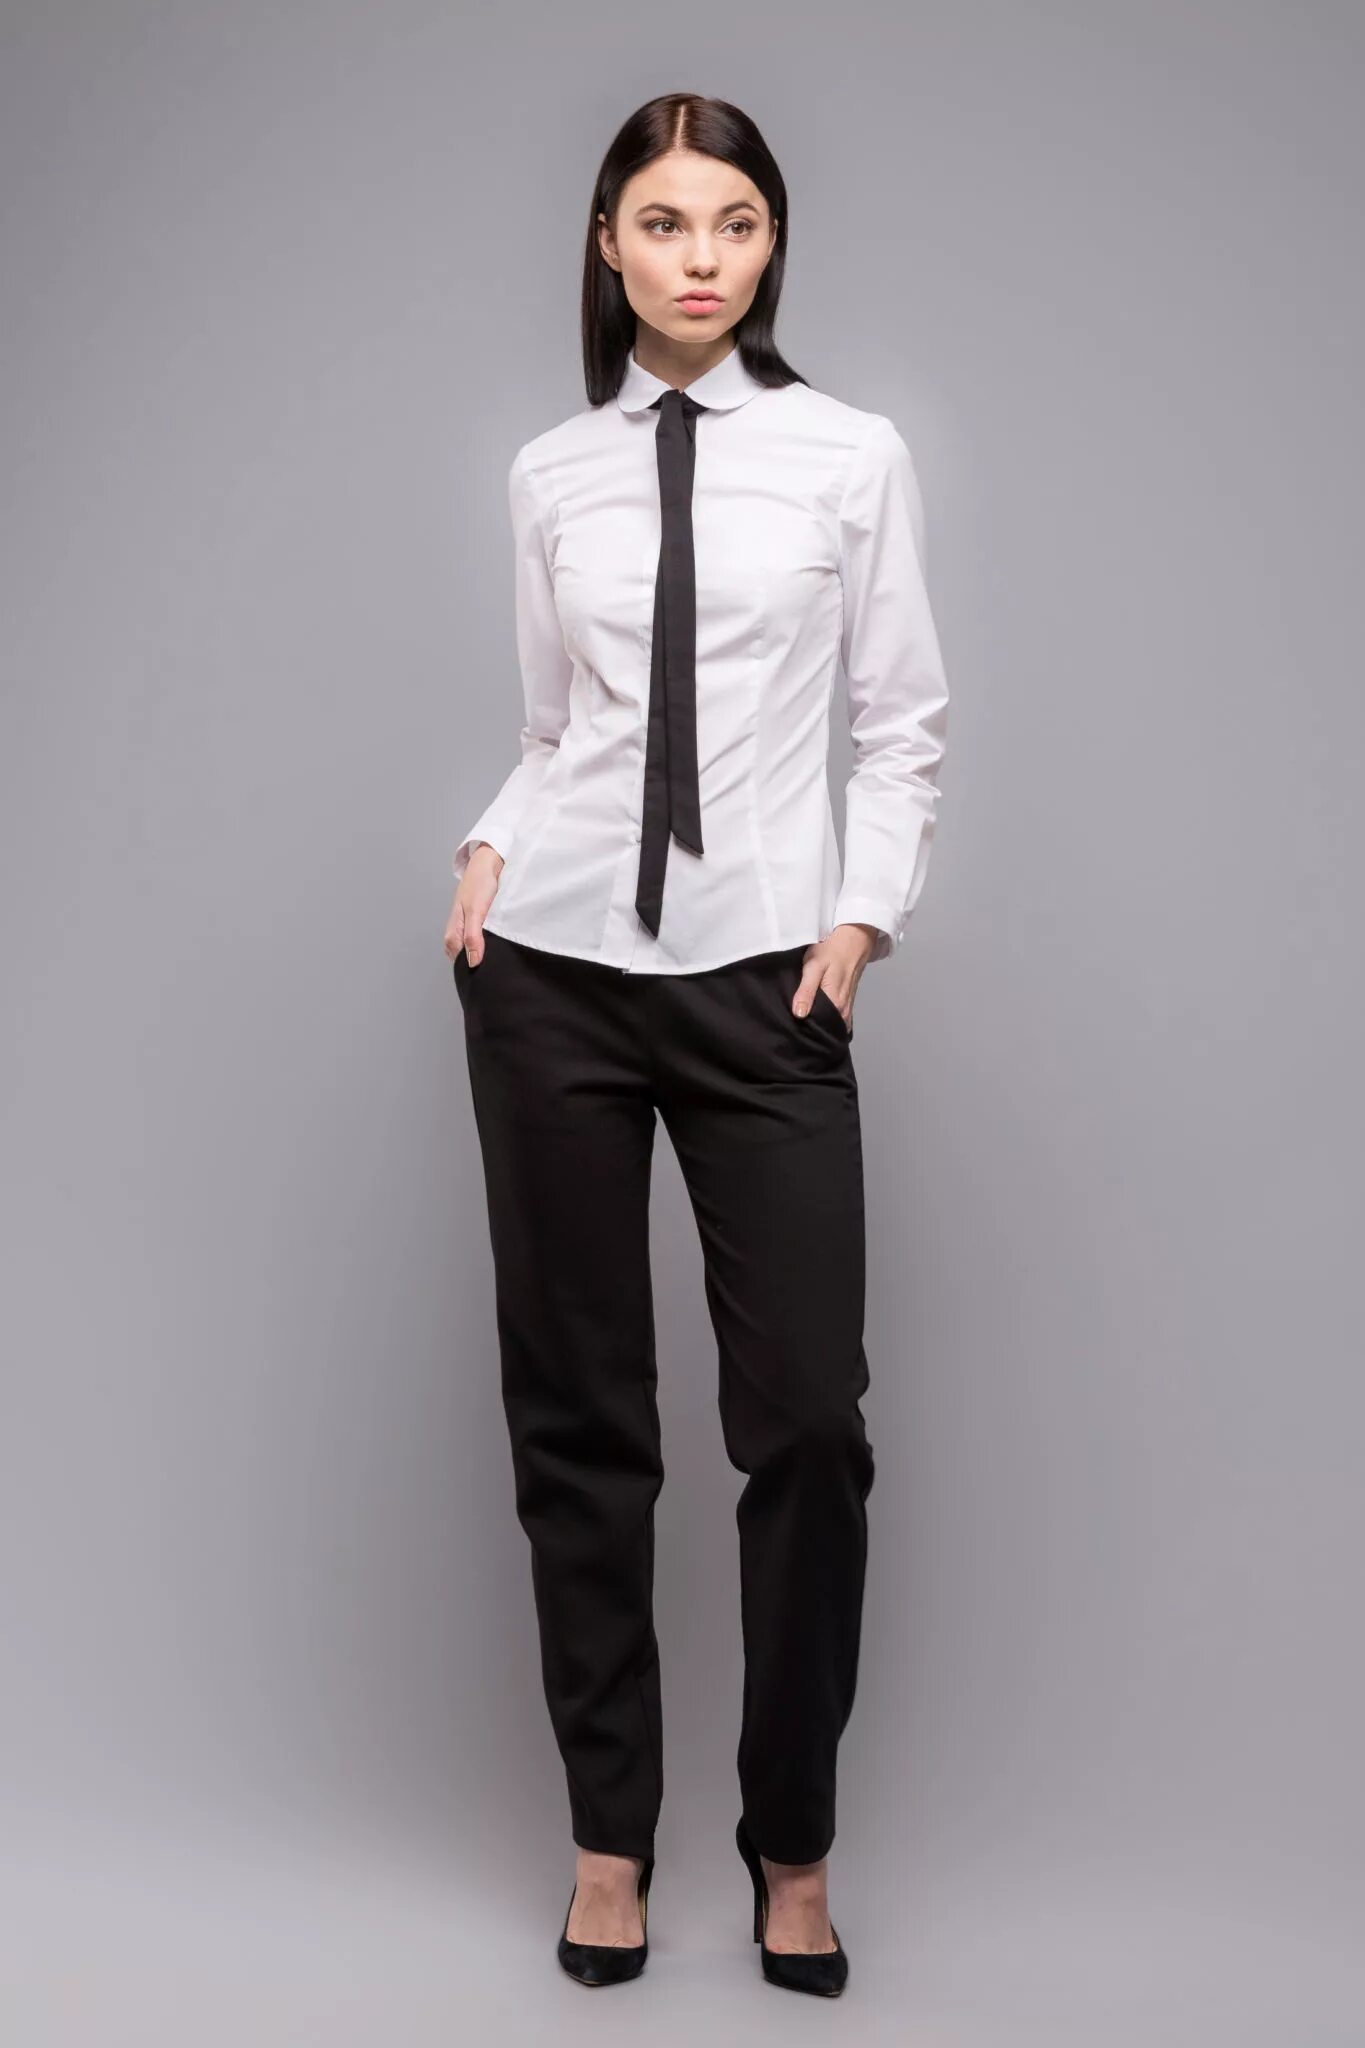 Черные брюки белая блузка. Классические брюки с рубашкой женские. Девушка в блузке и брюках. Девушка в брюках и рубашке. Брюки женские черные.